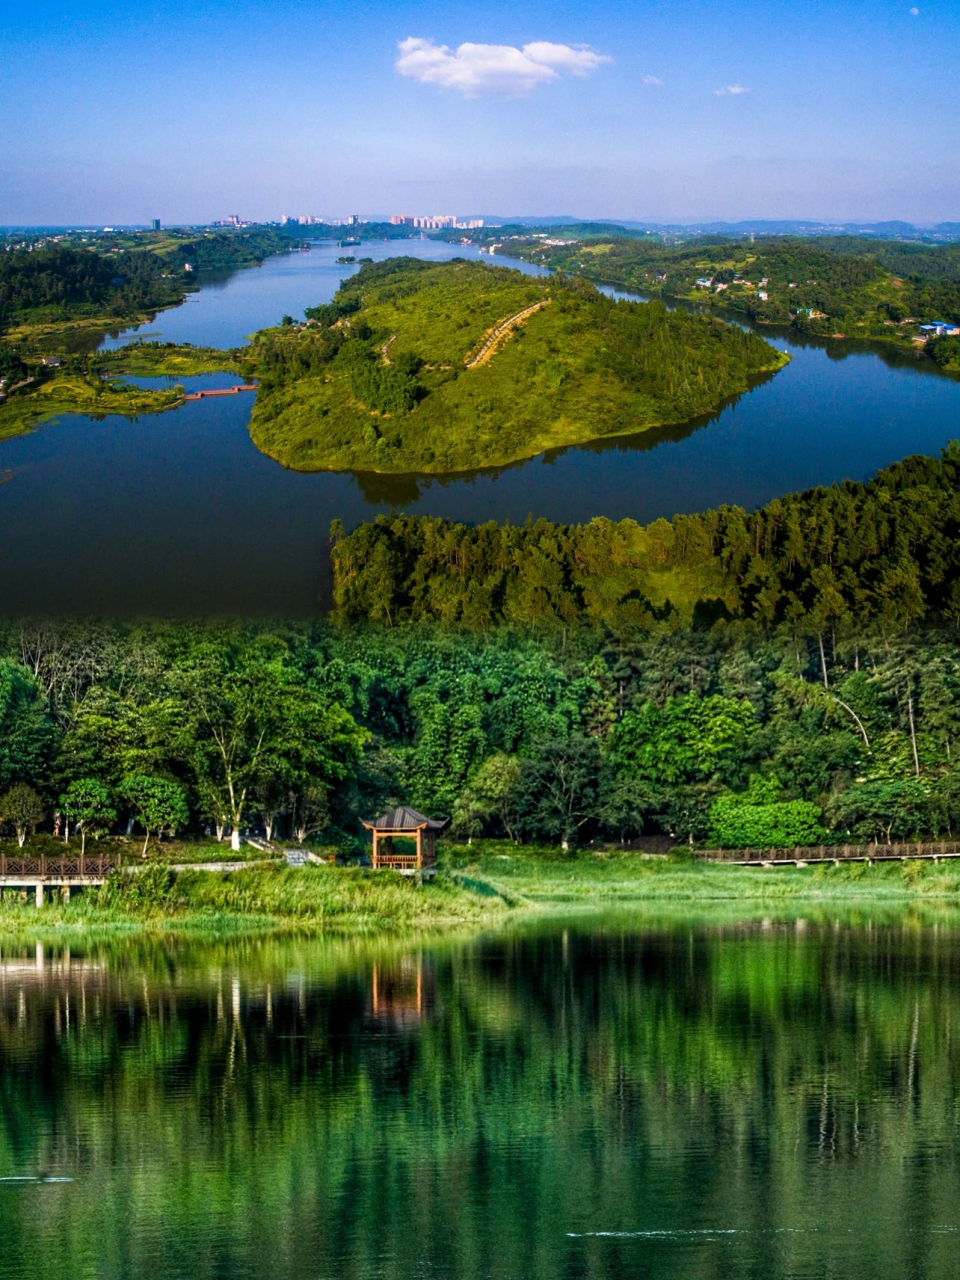 隆昌古宇湖风景介绍图片